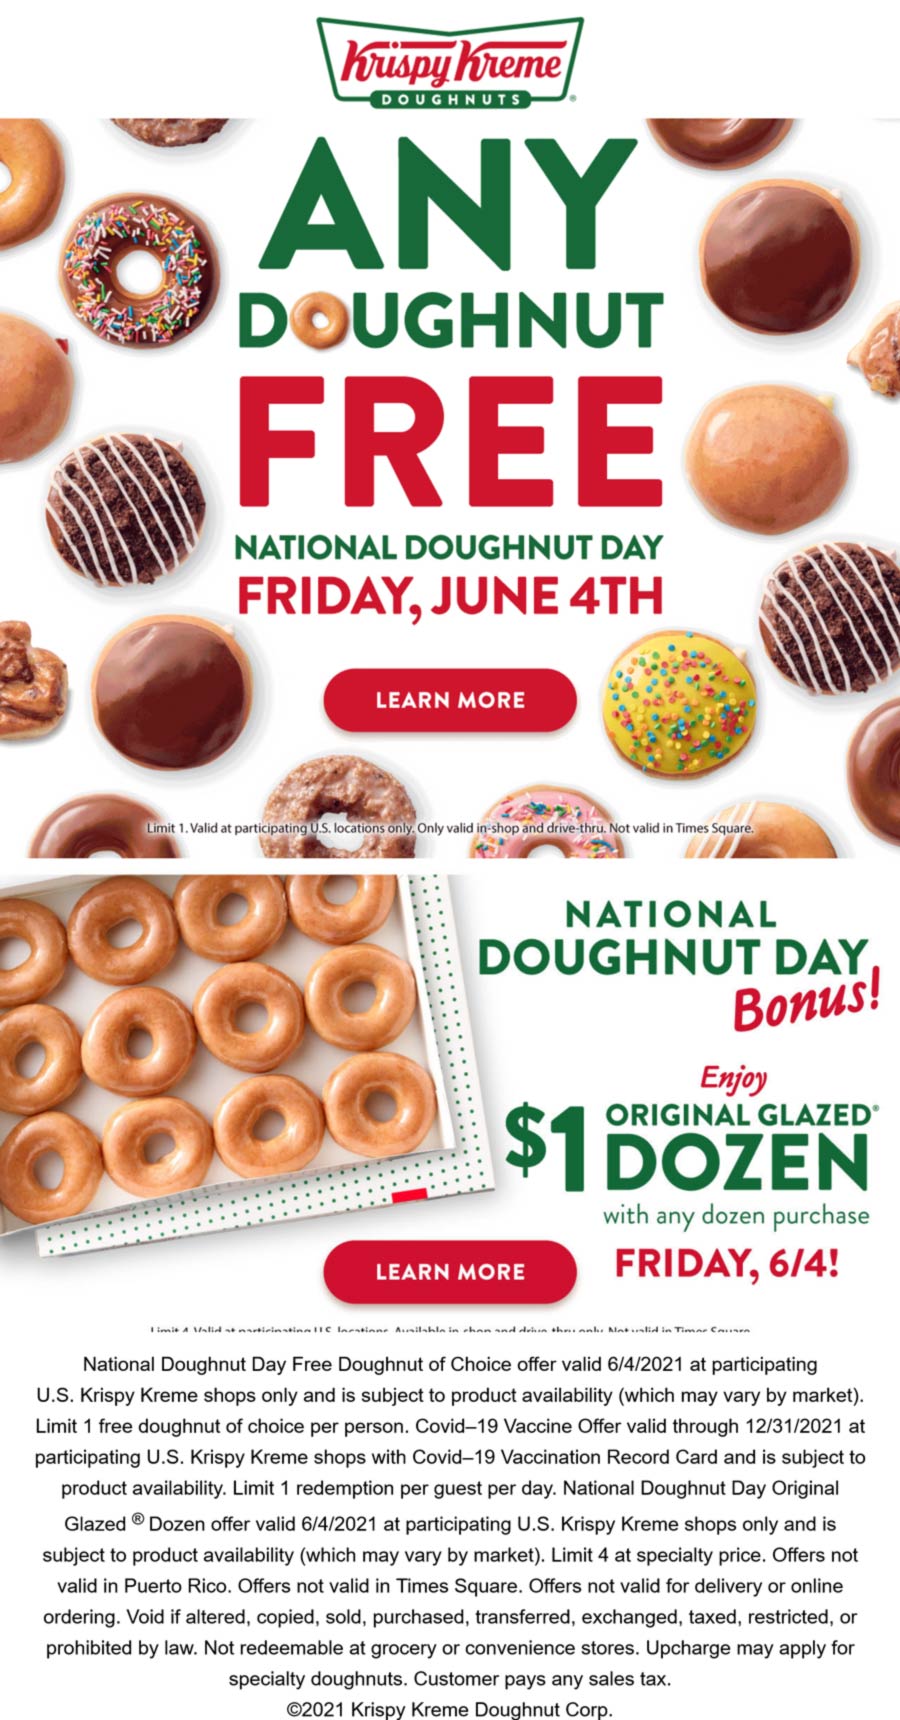 Krispy Kreme restaurants Coupon  Any doughnut free Friday at Krispy Kreme, also 2nd dozen for $1 #krispykreme 